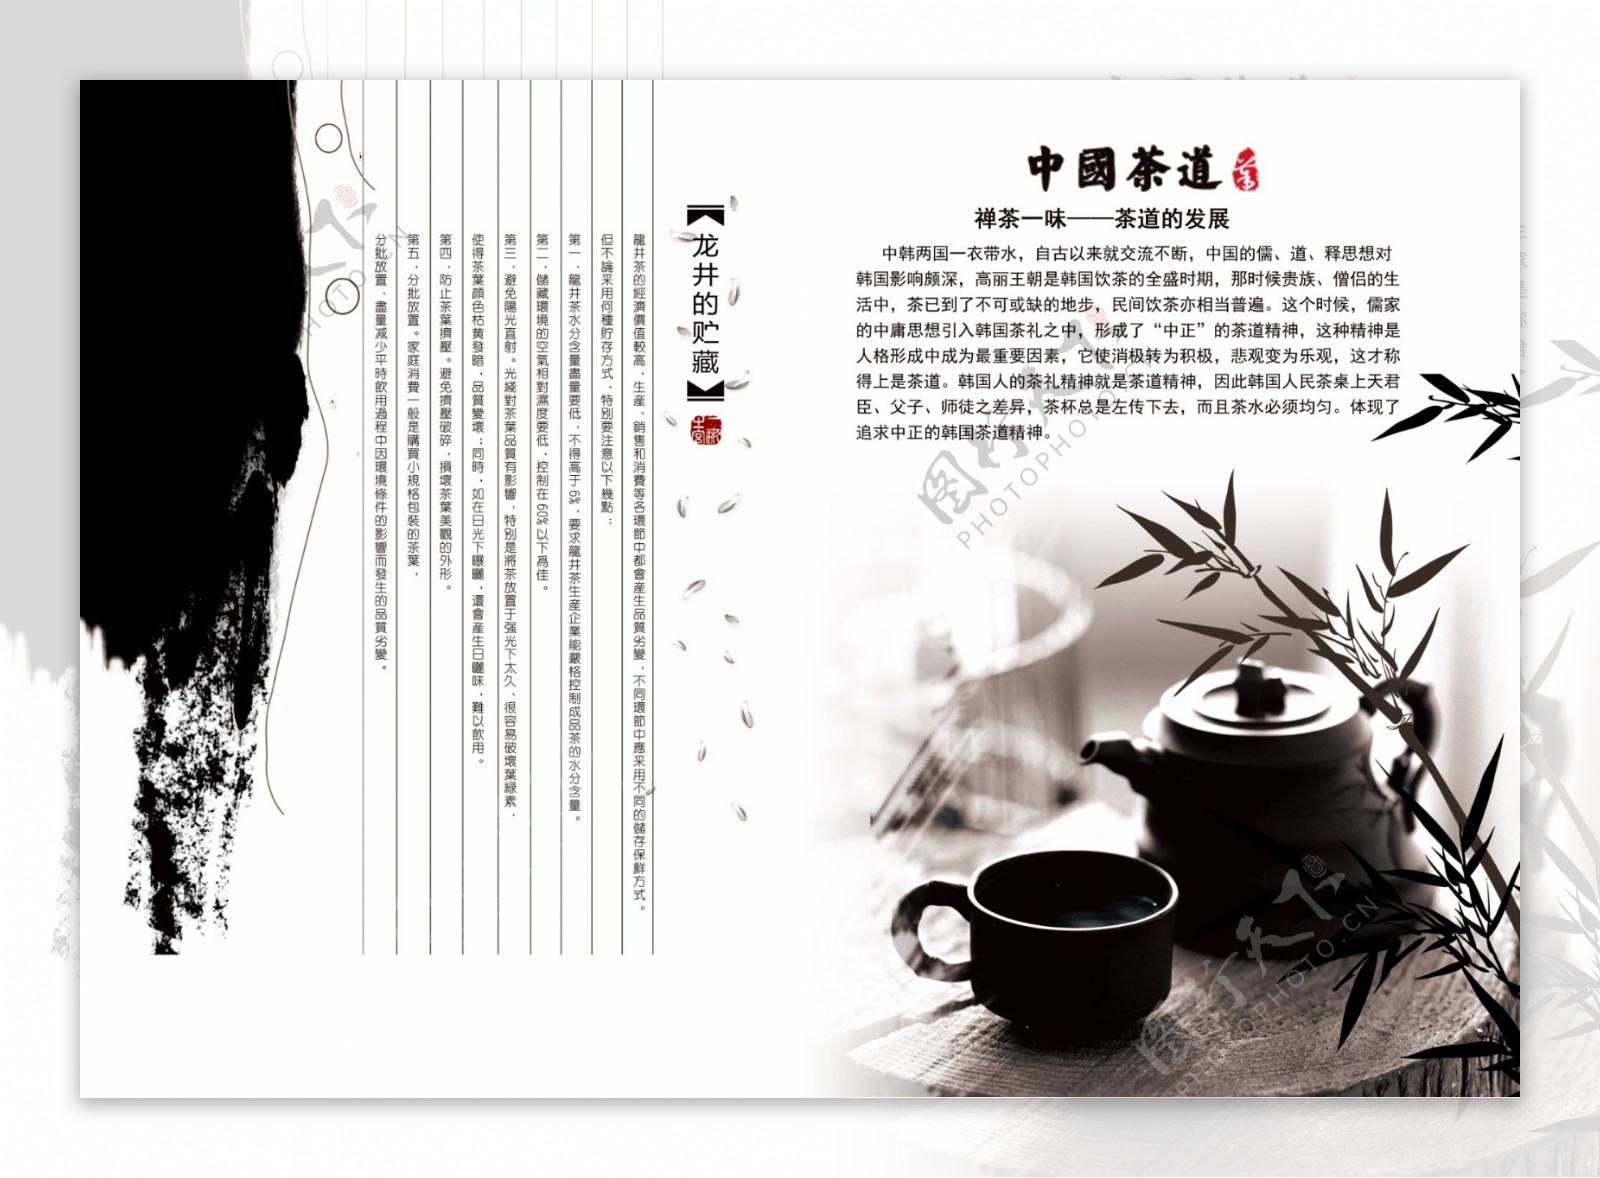 中国风龙井茶茶道画册